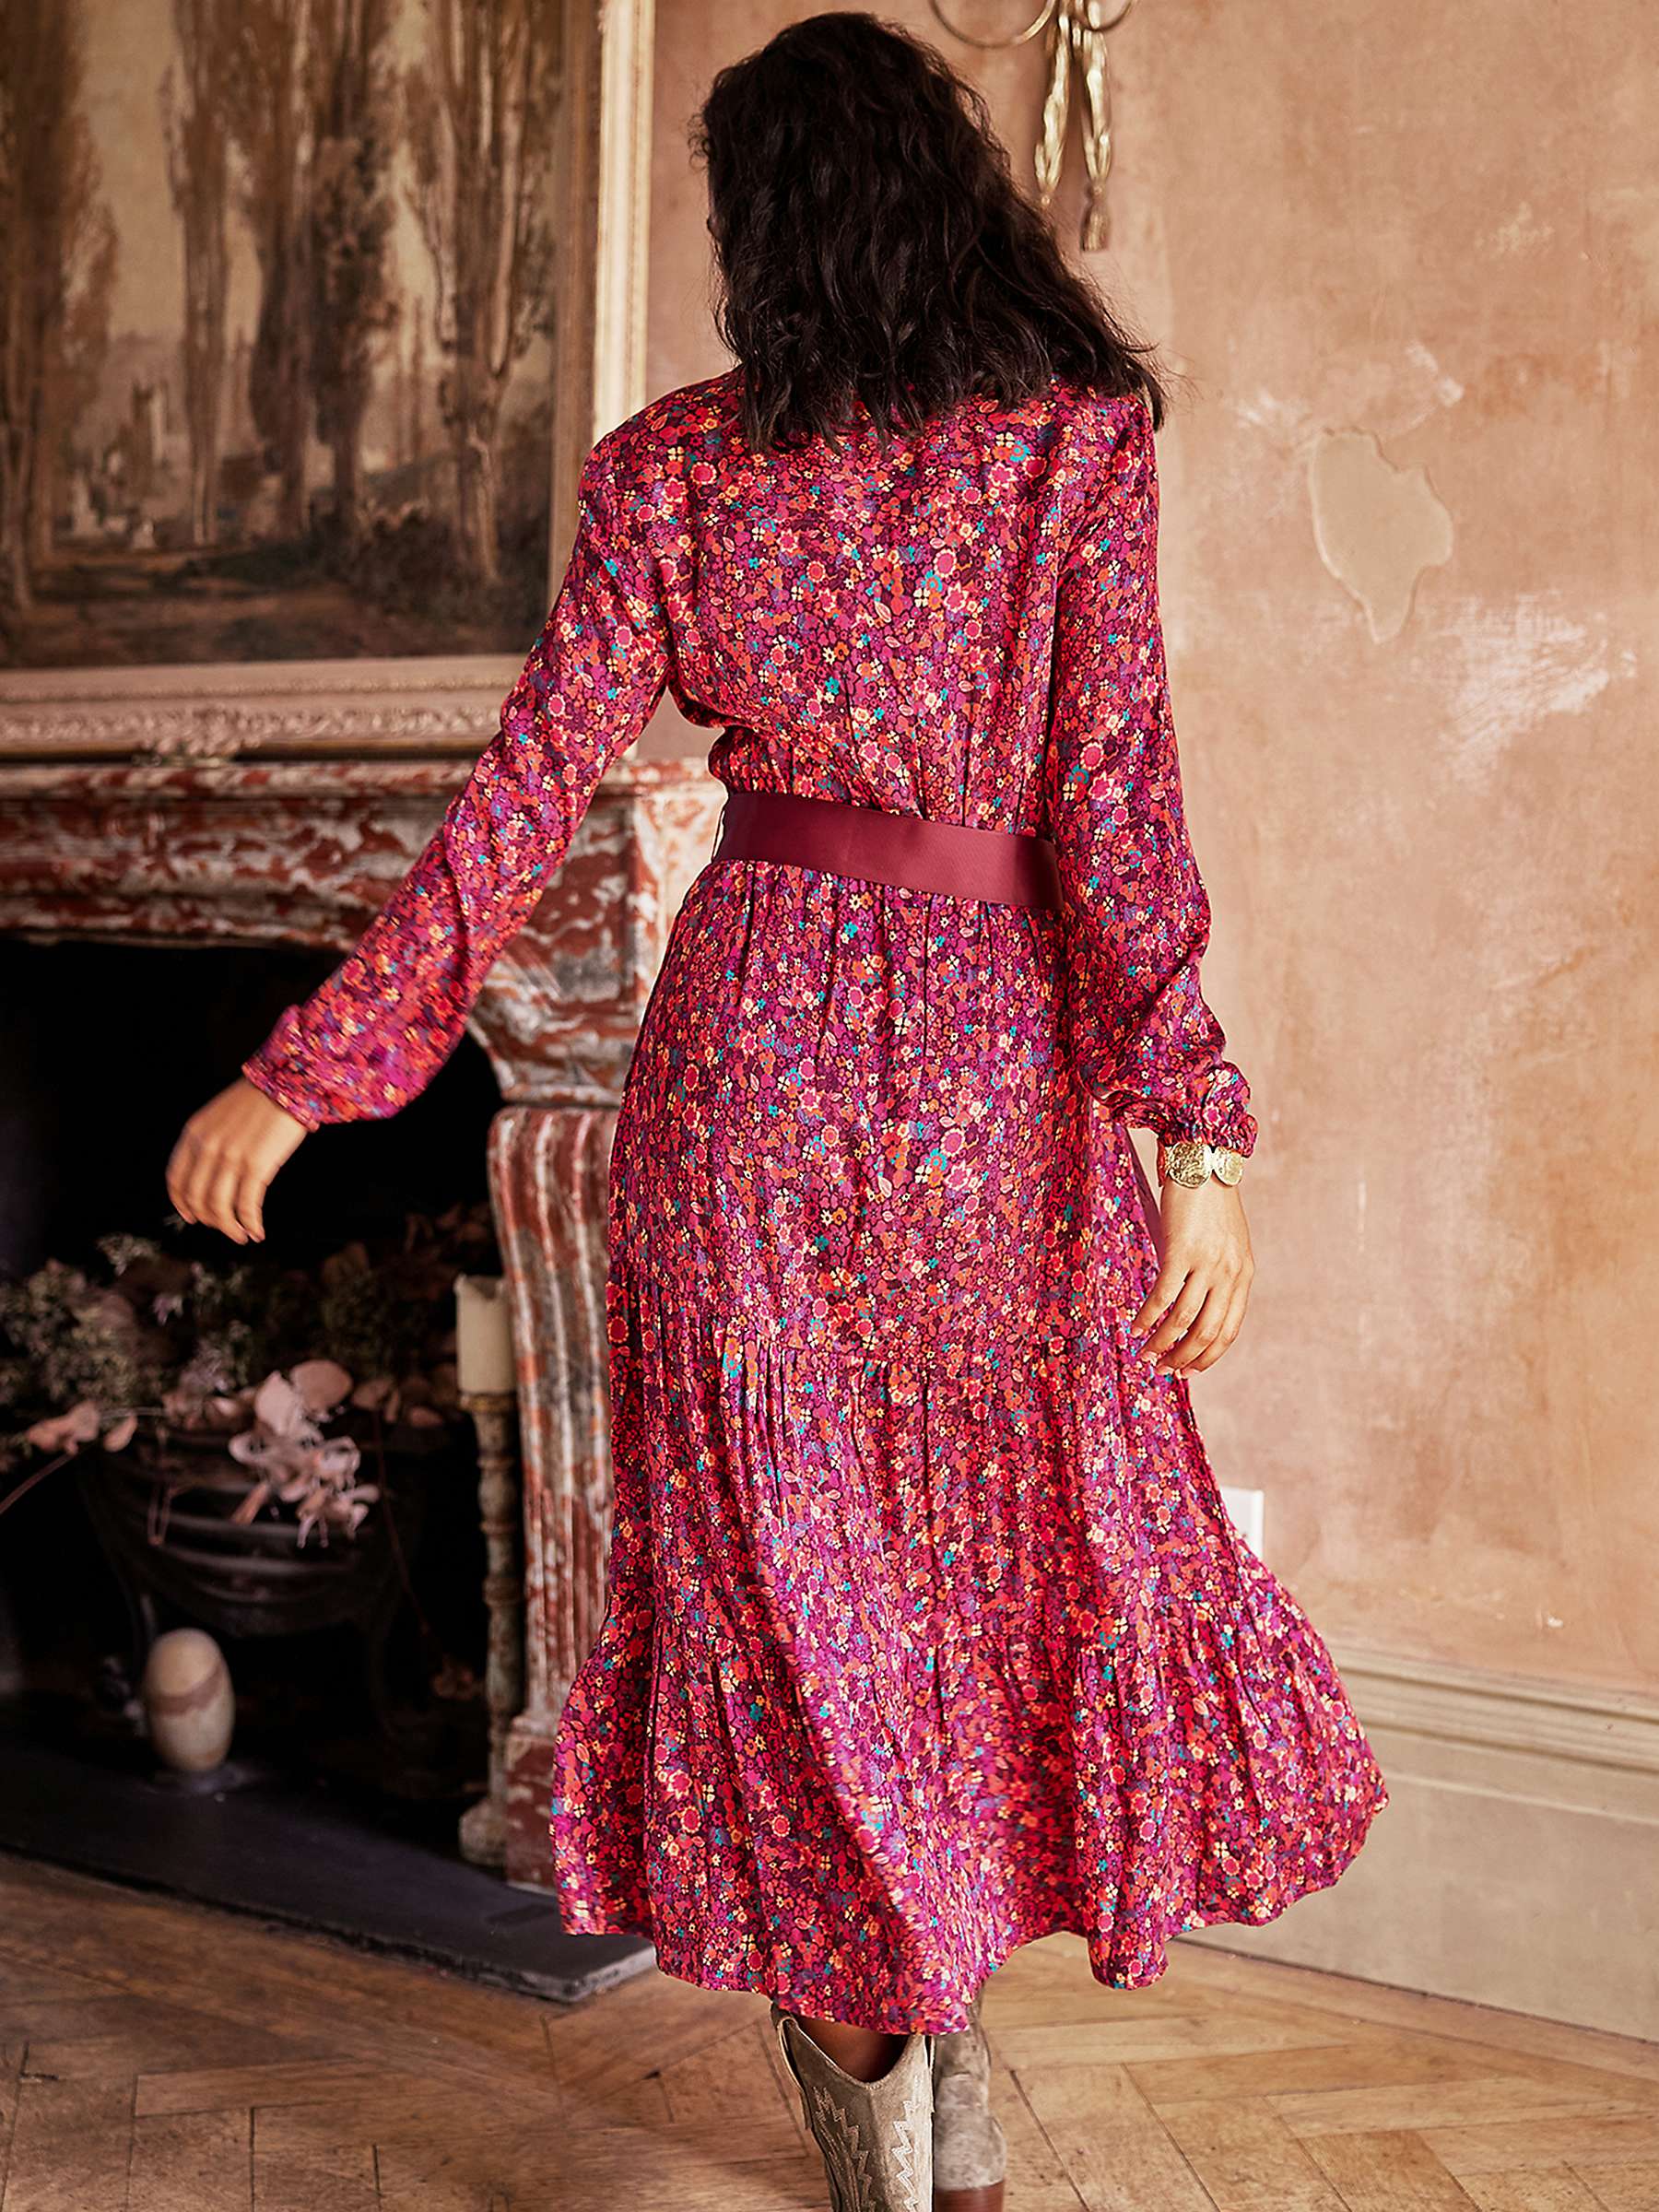 Buy Aspiga Jessica Shirt Dress, Burgundy Online at johnlewis.com